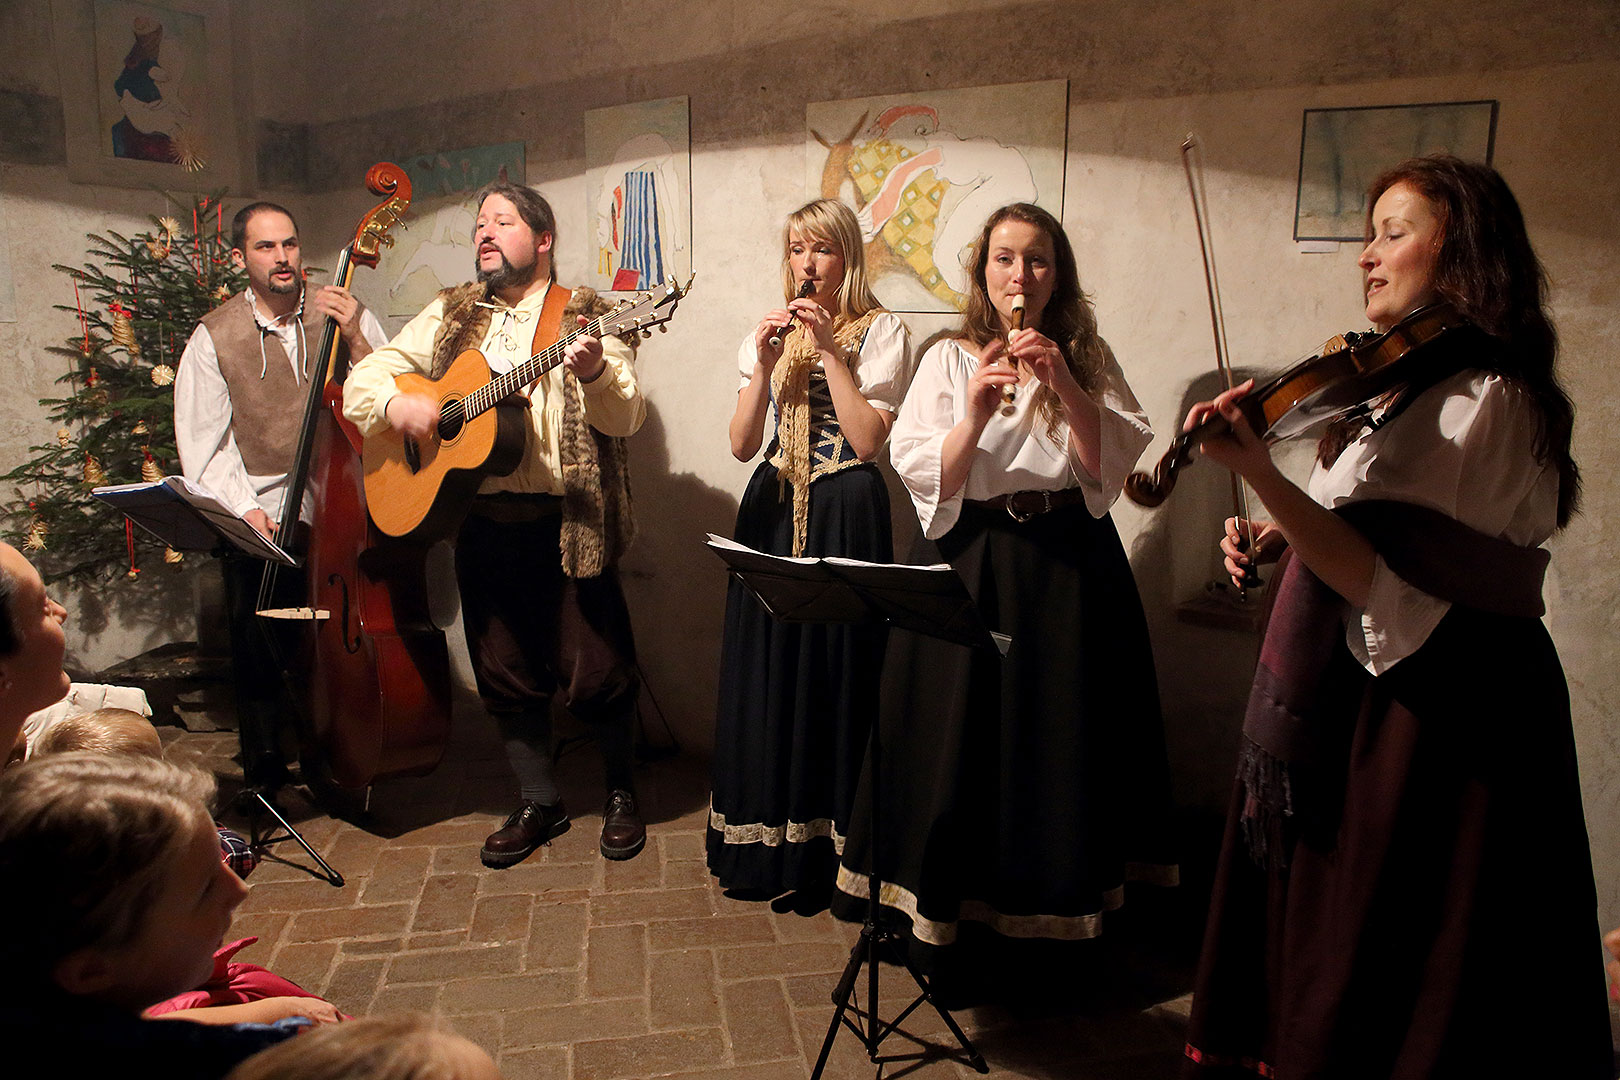 Kapka - tradiční vánoční koncert českokrumlovské folkové kapely, 25.12.2013